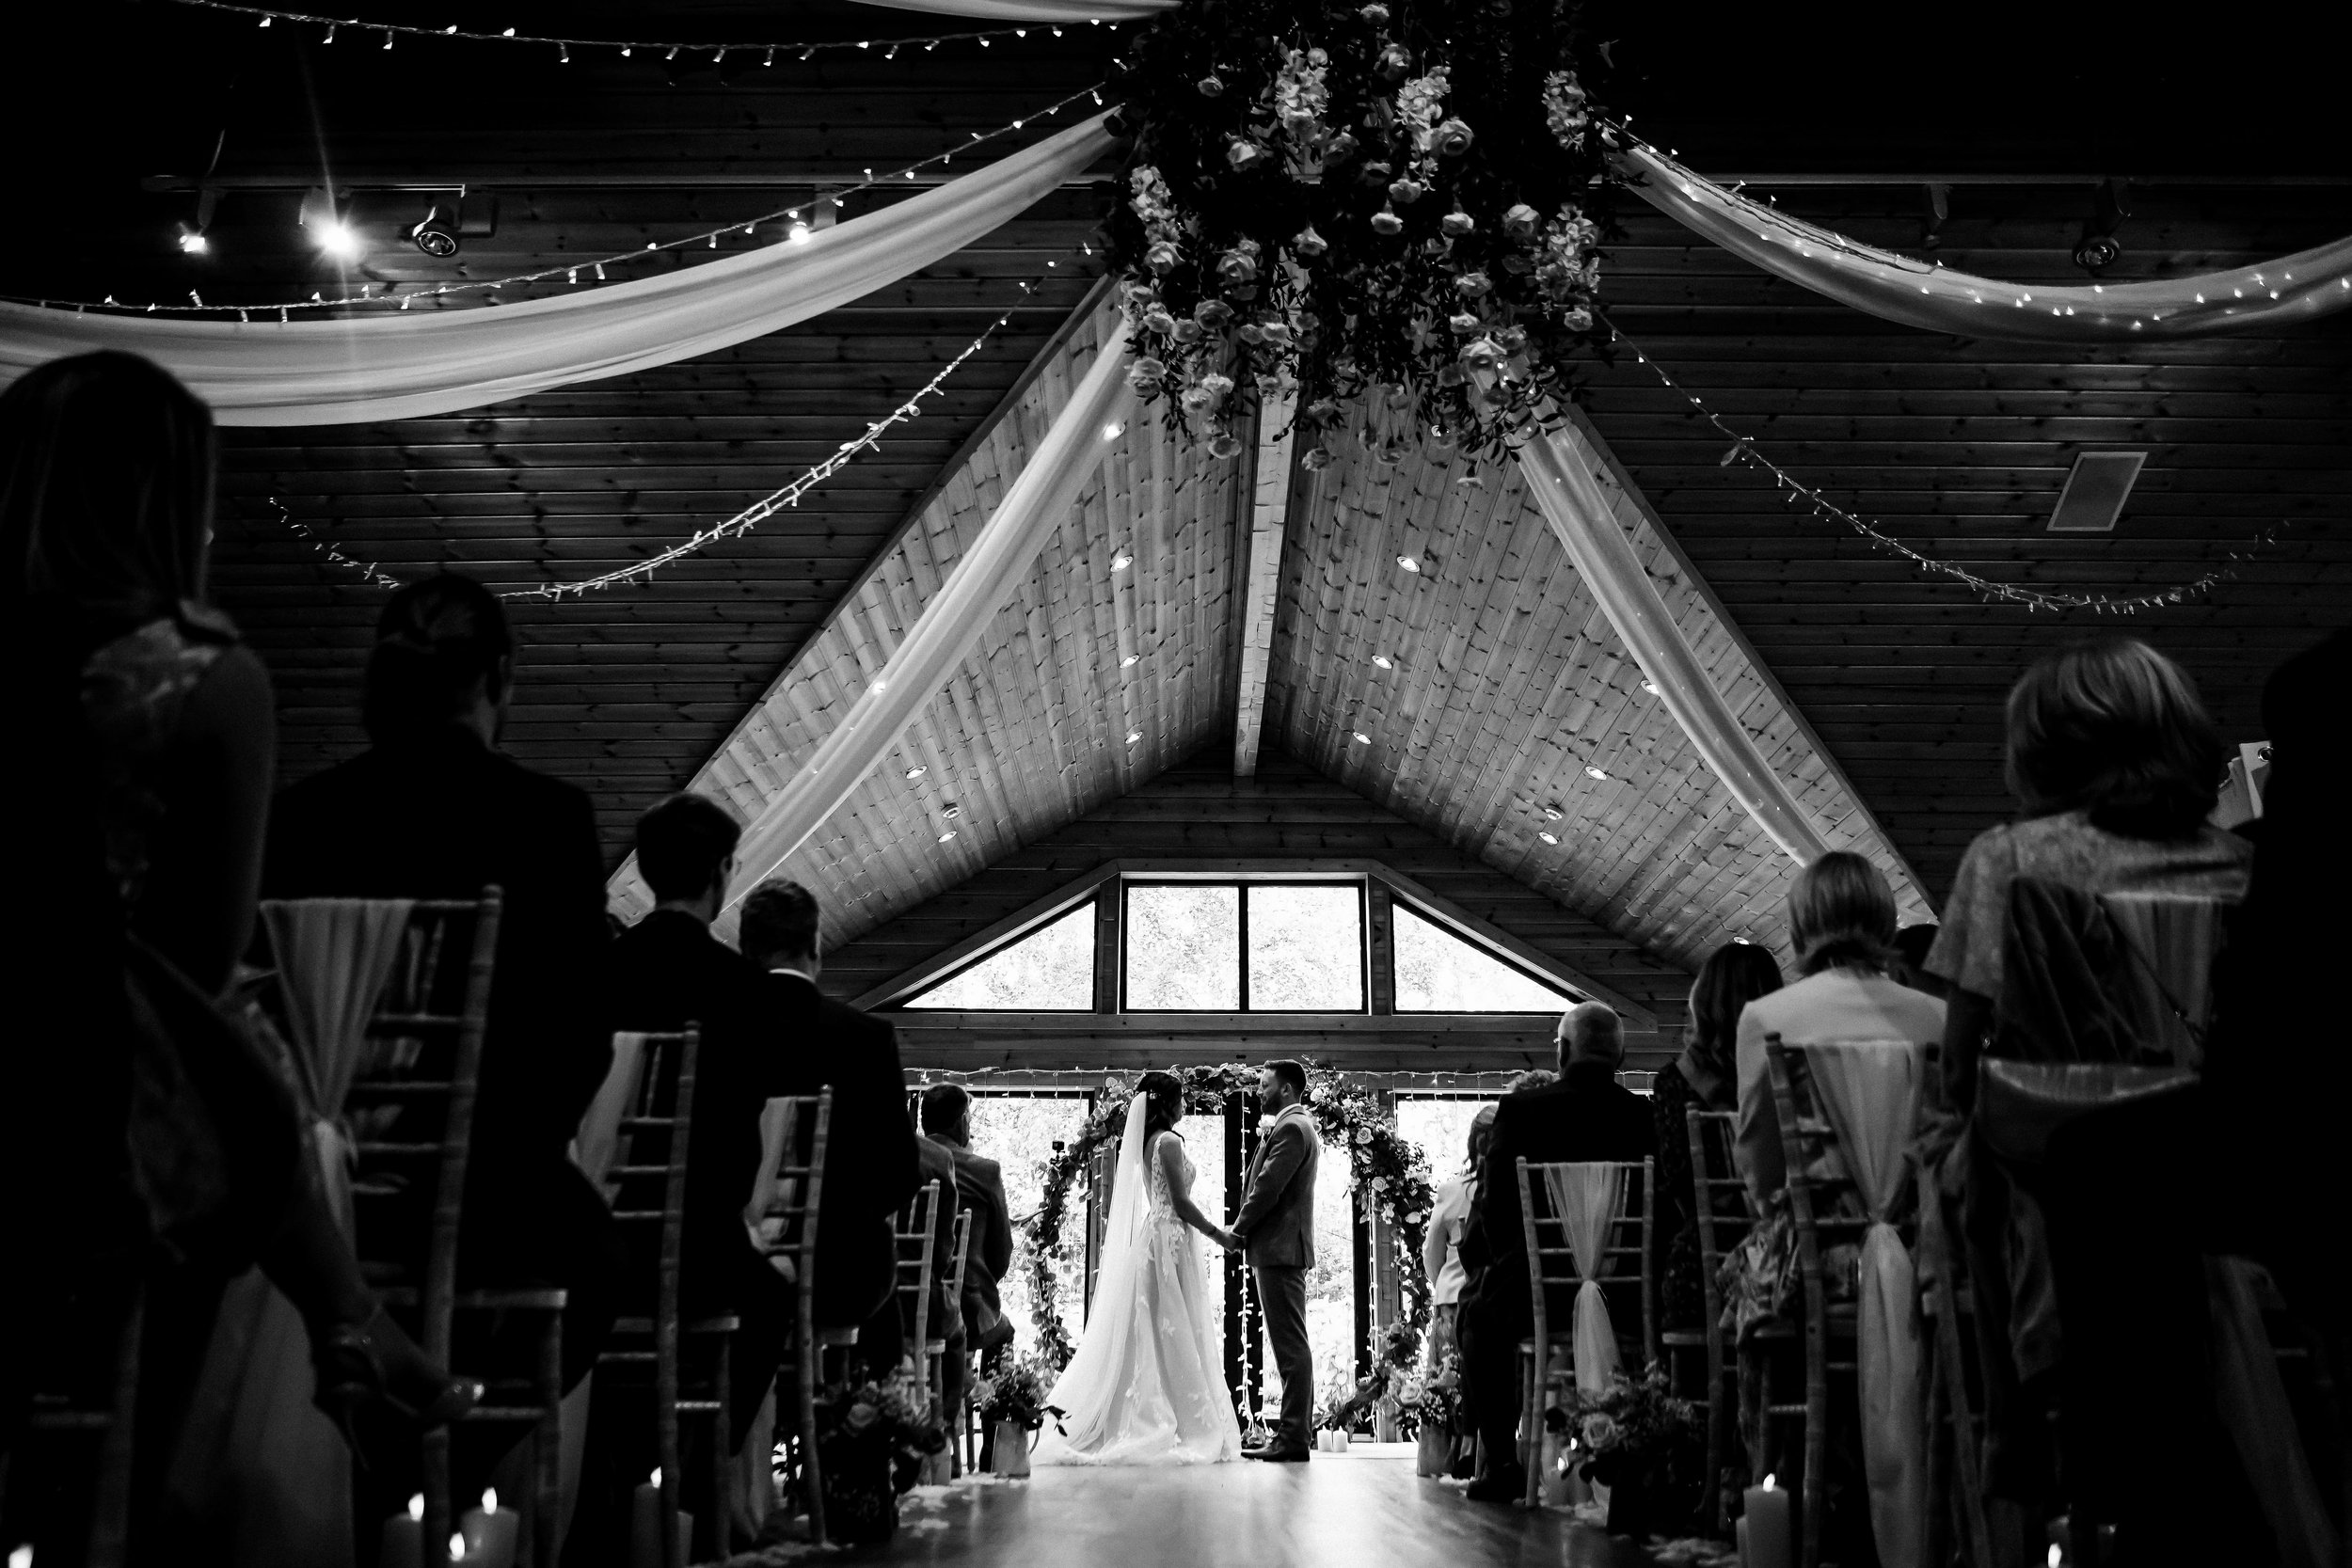 styal lodge wedding photography cheshire wedding photographer - 018.jpg